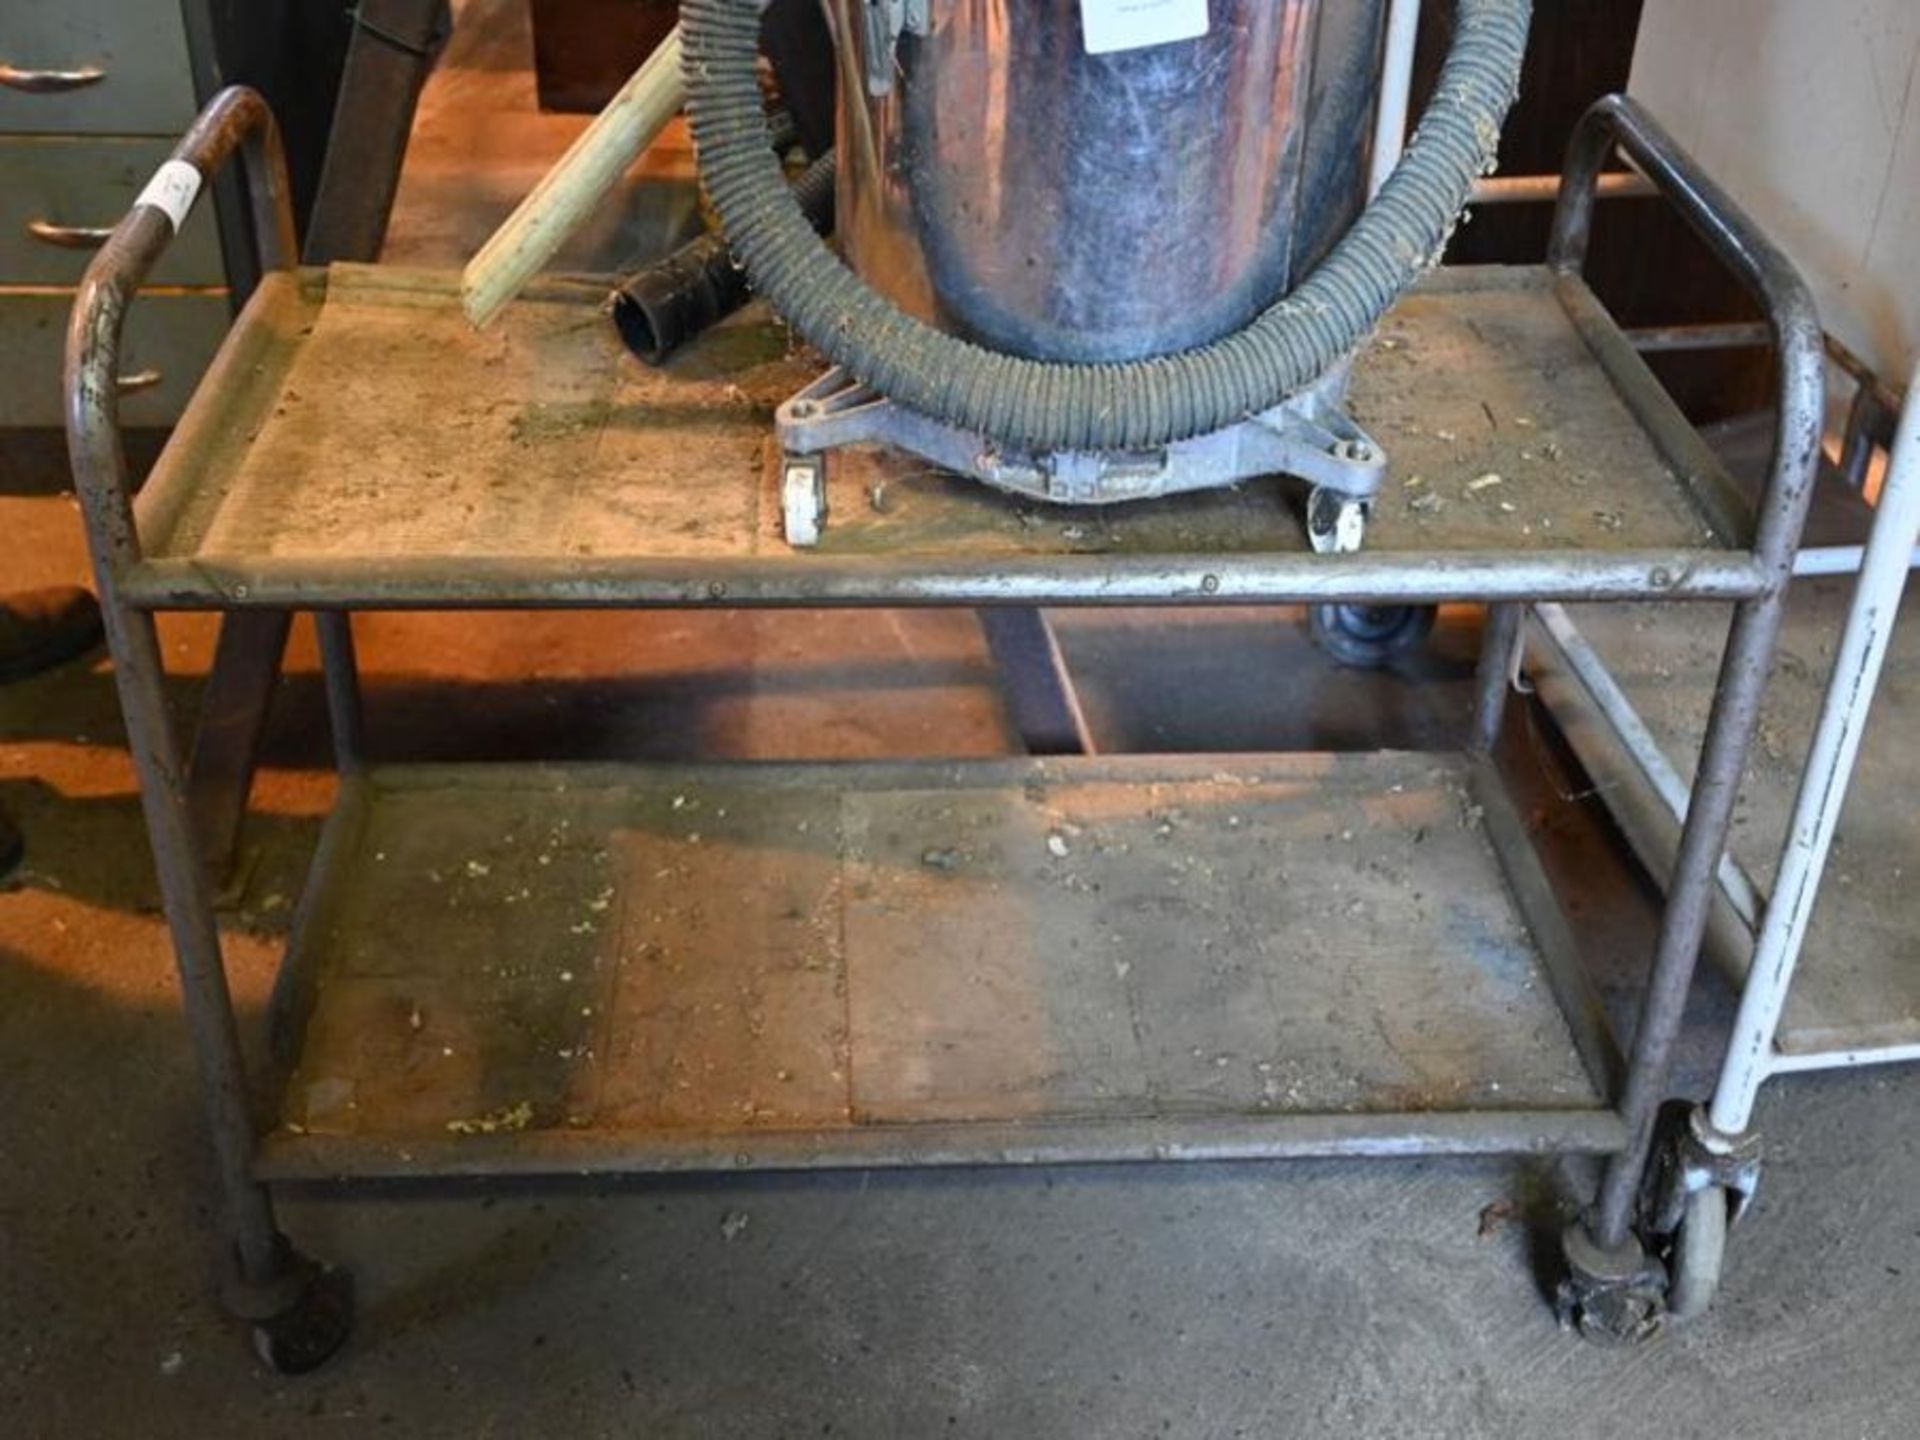 Small metal workshop trolley